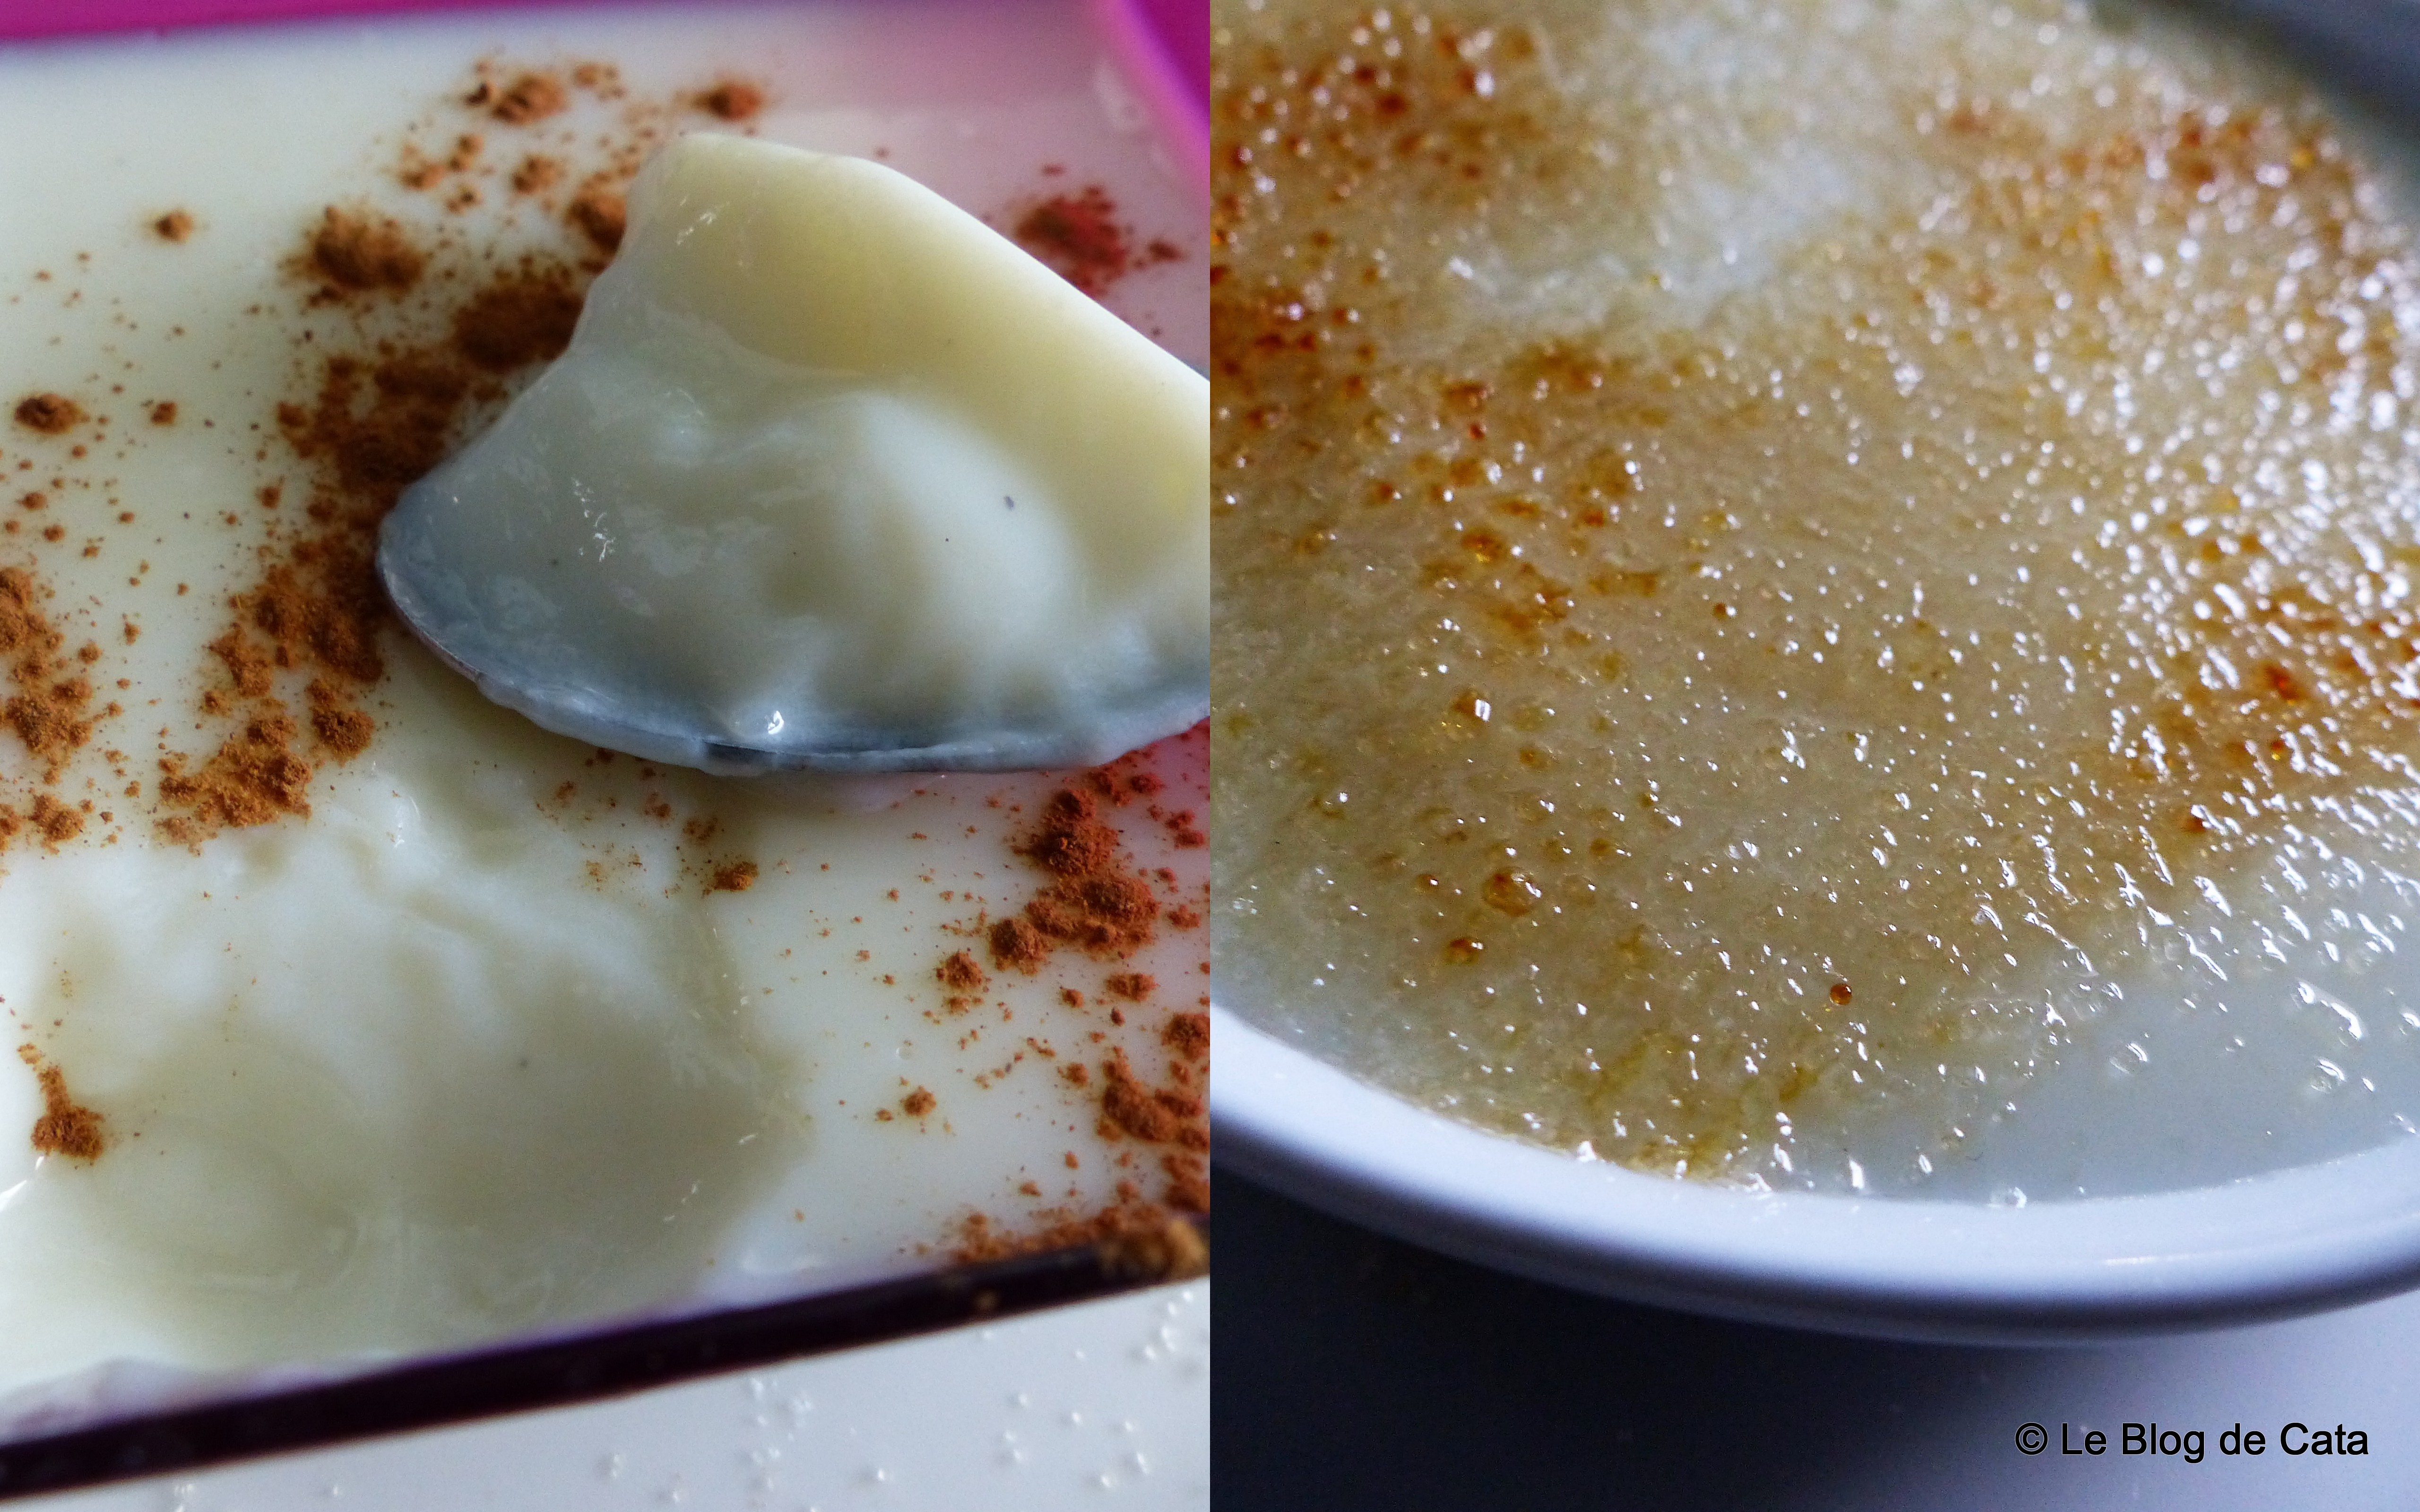 Crema de lapte - Paraguay (Crema de leche y maizena)